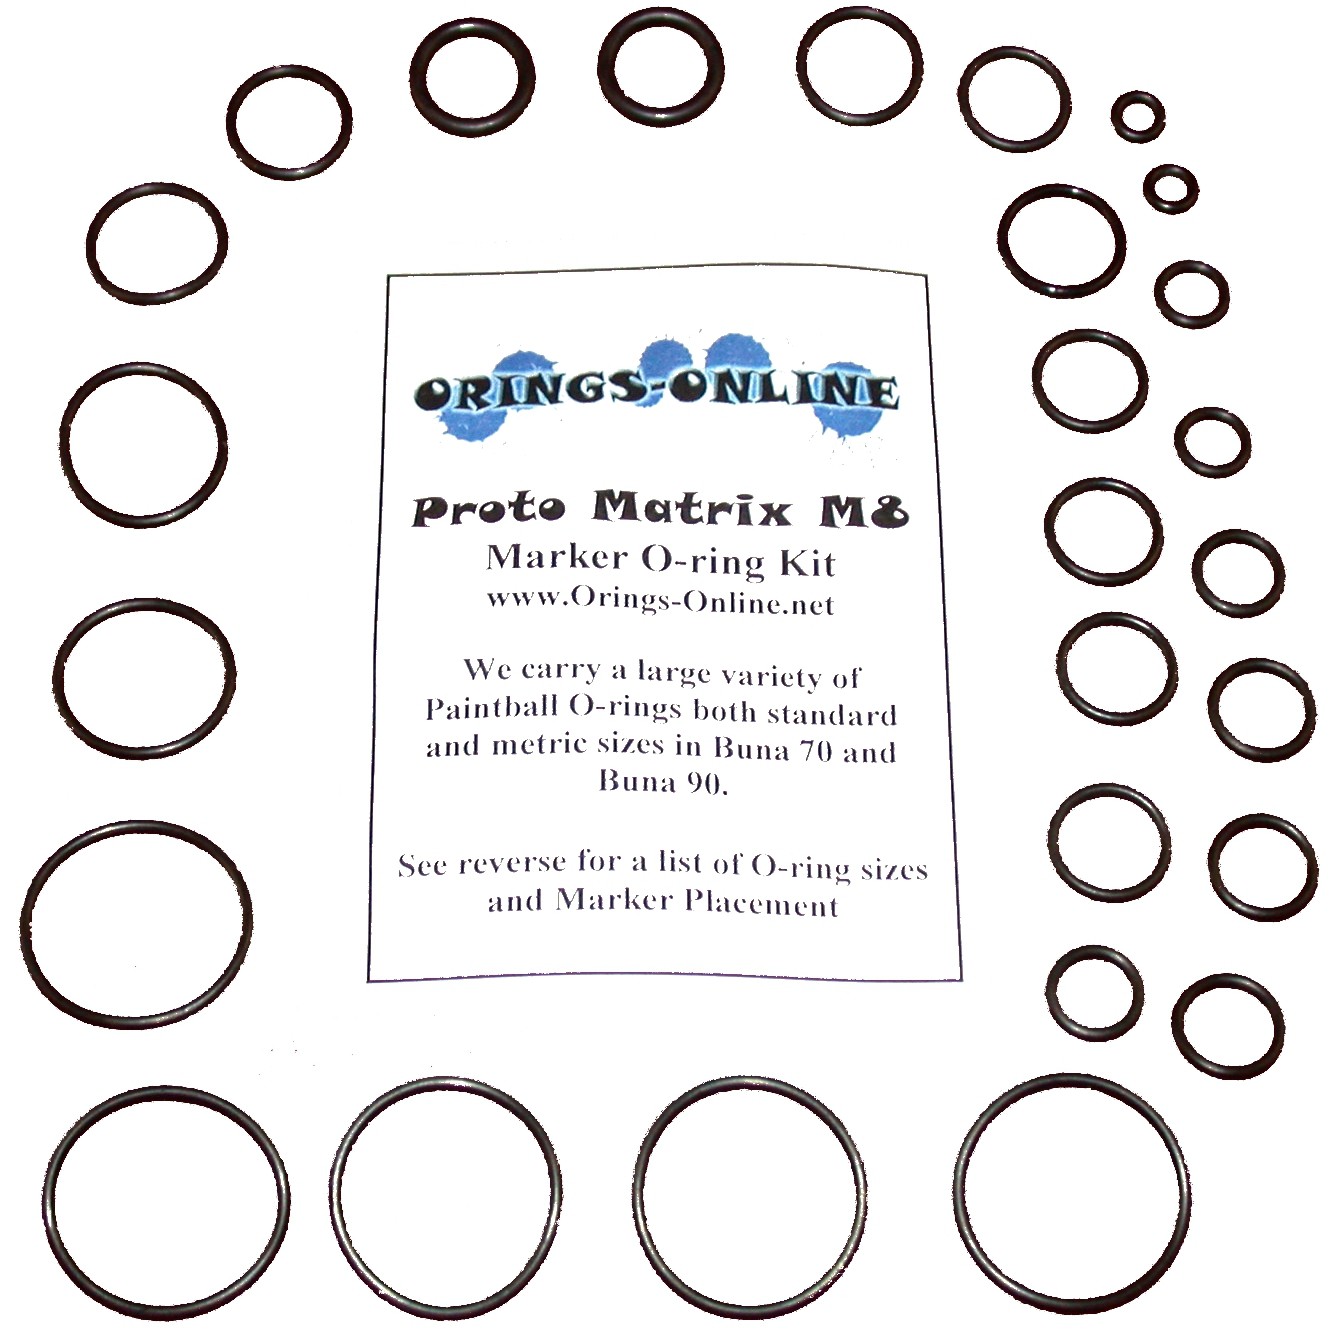 Proto Matrix M8 O-ring Kit